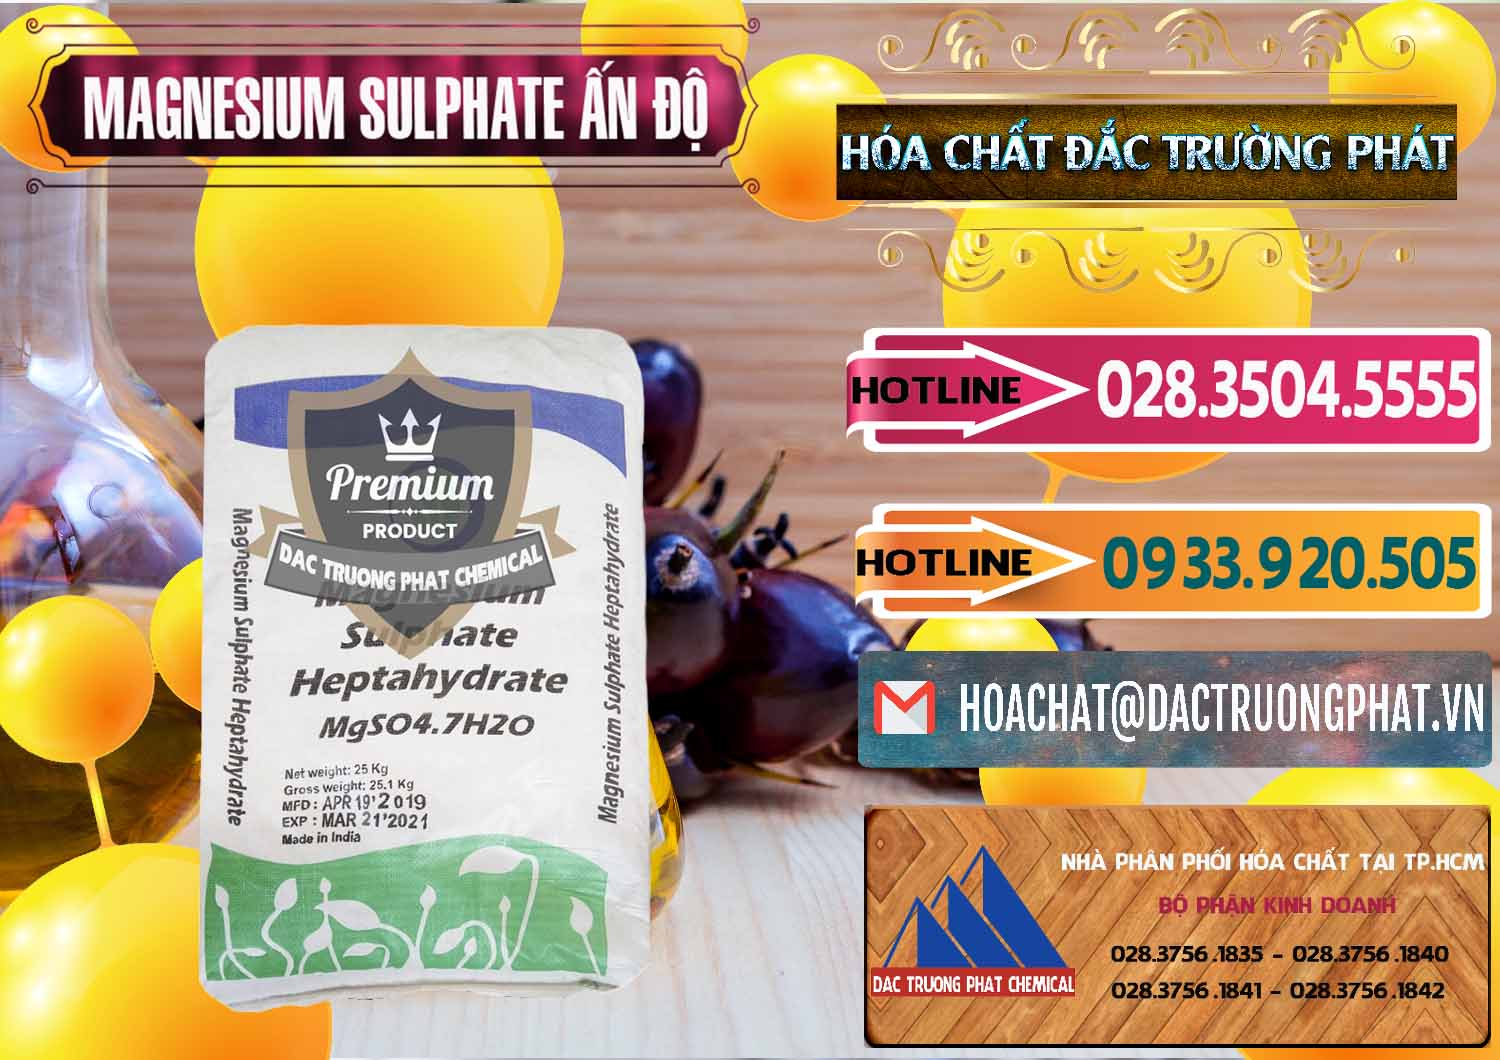 Cty chuyên nhập khẩu và bán MGSO4.7H2O – Magnesium Sulphate Heptahydrate Ấn Độ India - 0362 - Đơn vị chuyên cung cấp & bán hóa chất tại TP.HCM - dactruongphat.vn